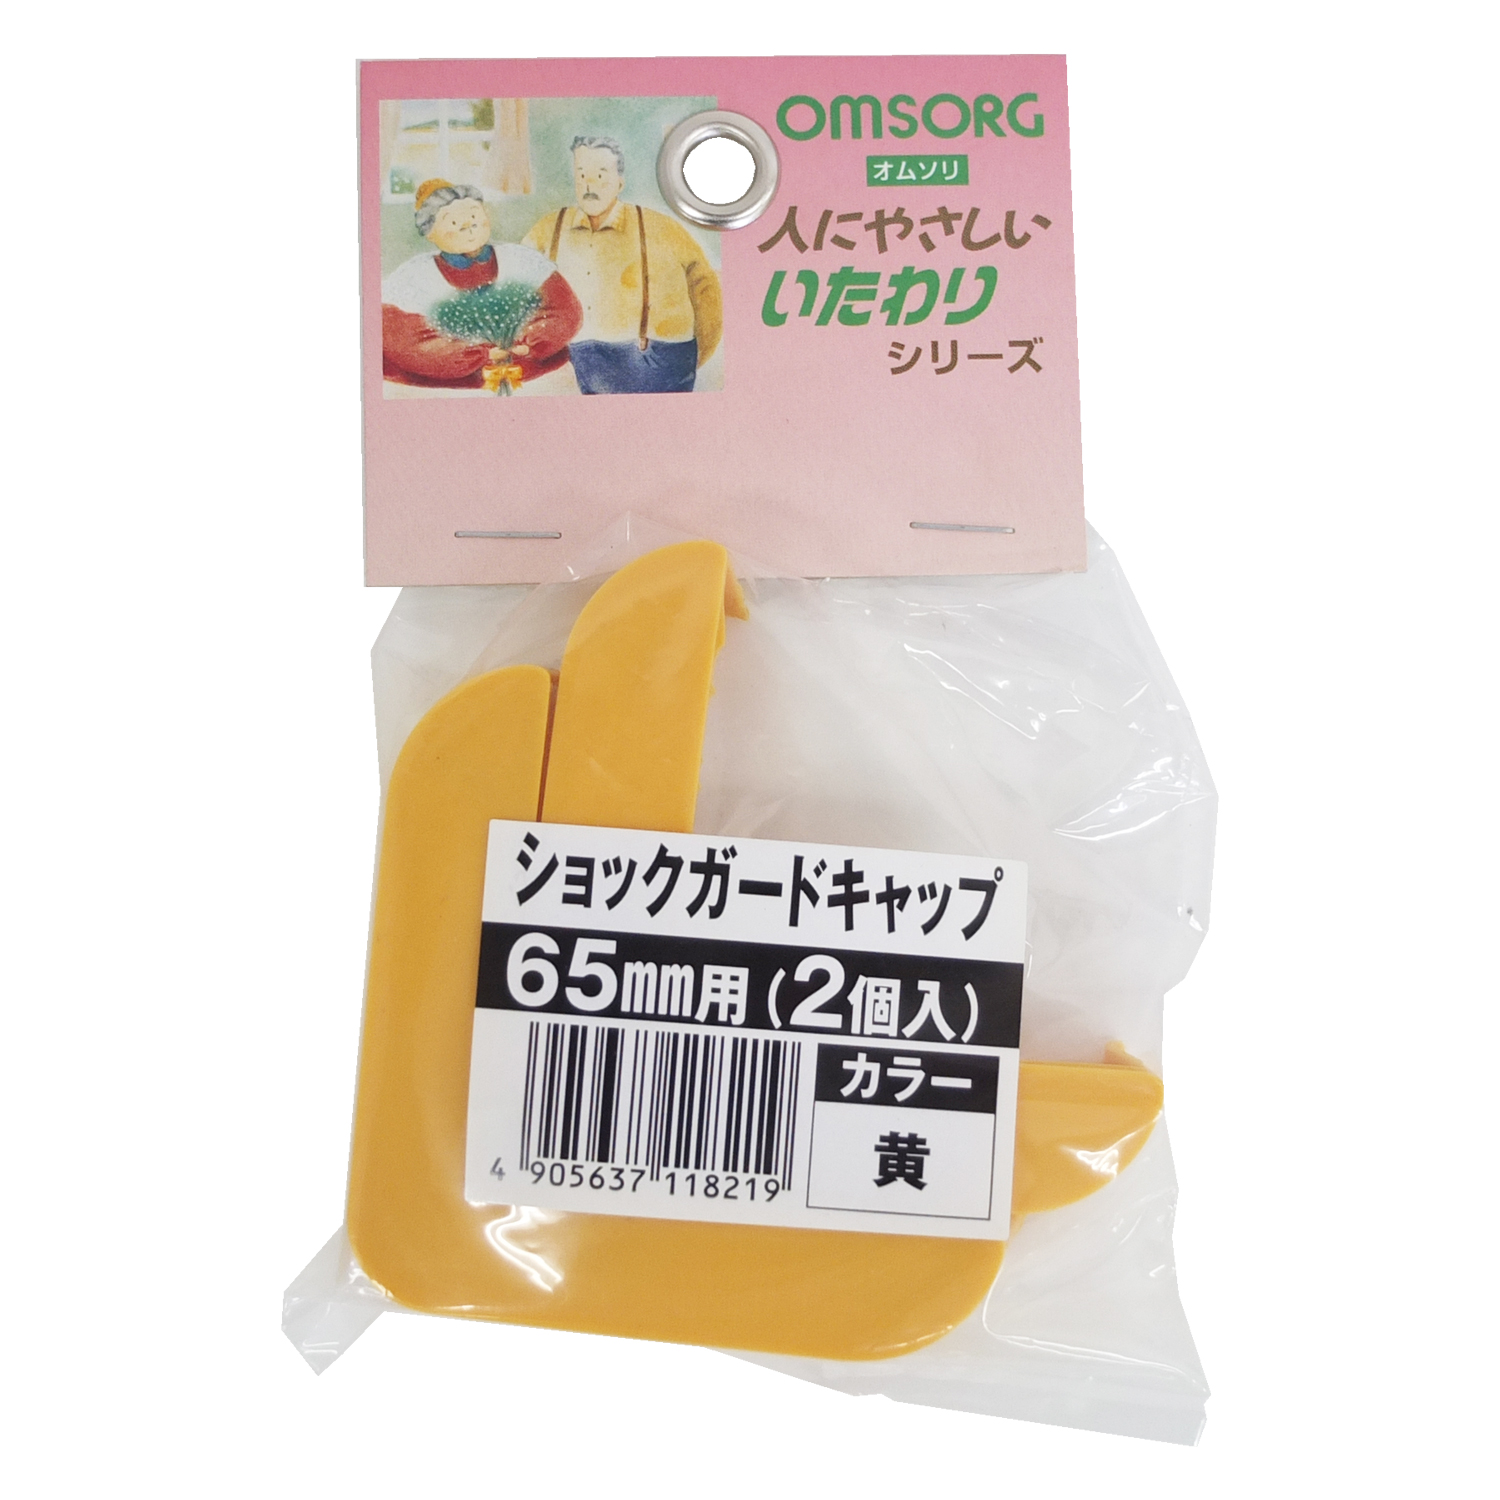 日本産 OMSORG オムソリ ショックガードキャップ 黄 65mm 2個入 清水 DIY コーナー